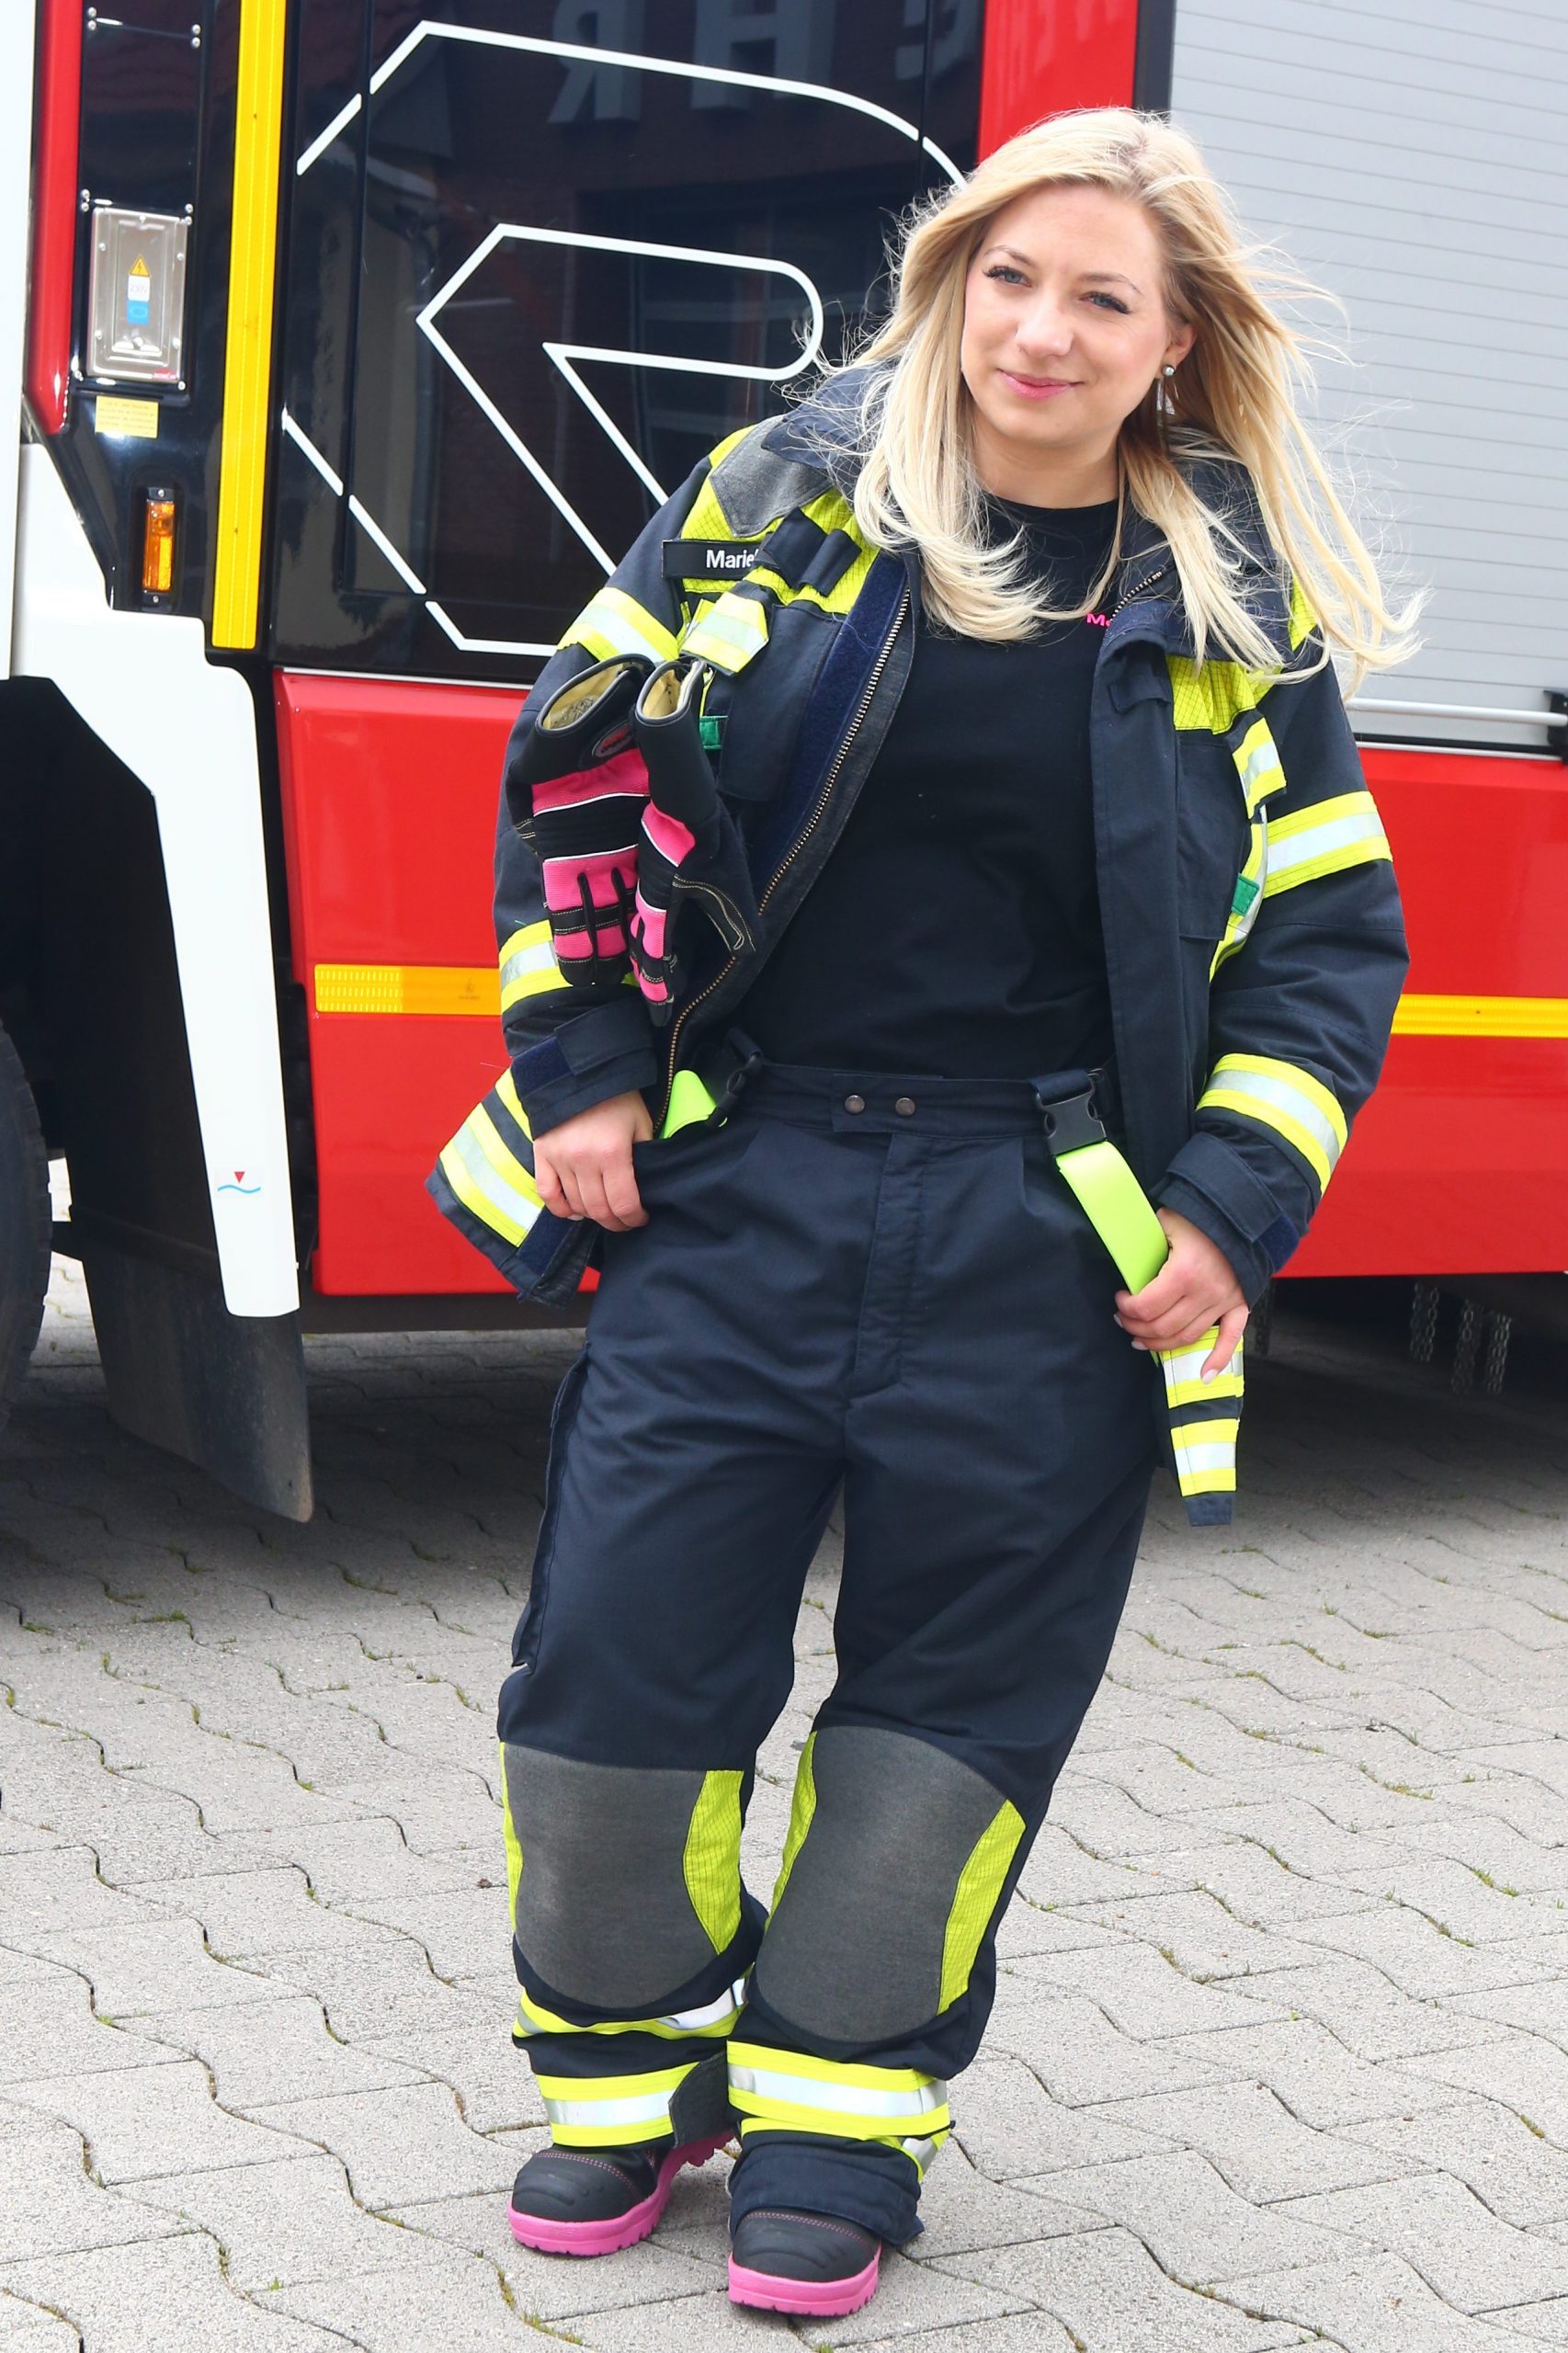 Marie Trappen ist Feuerwehrfrau und steht in voller Montur vor einem Einsatzfahrzeug.